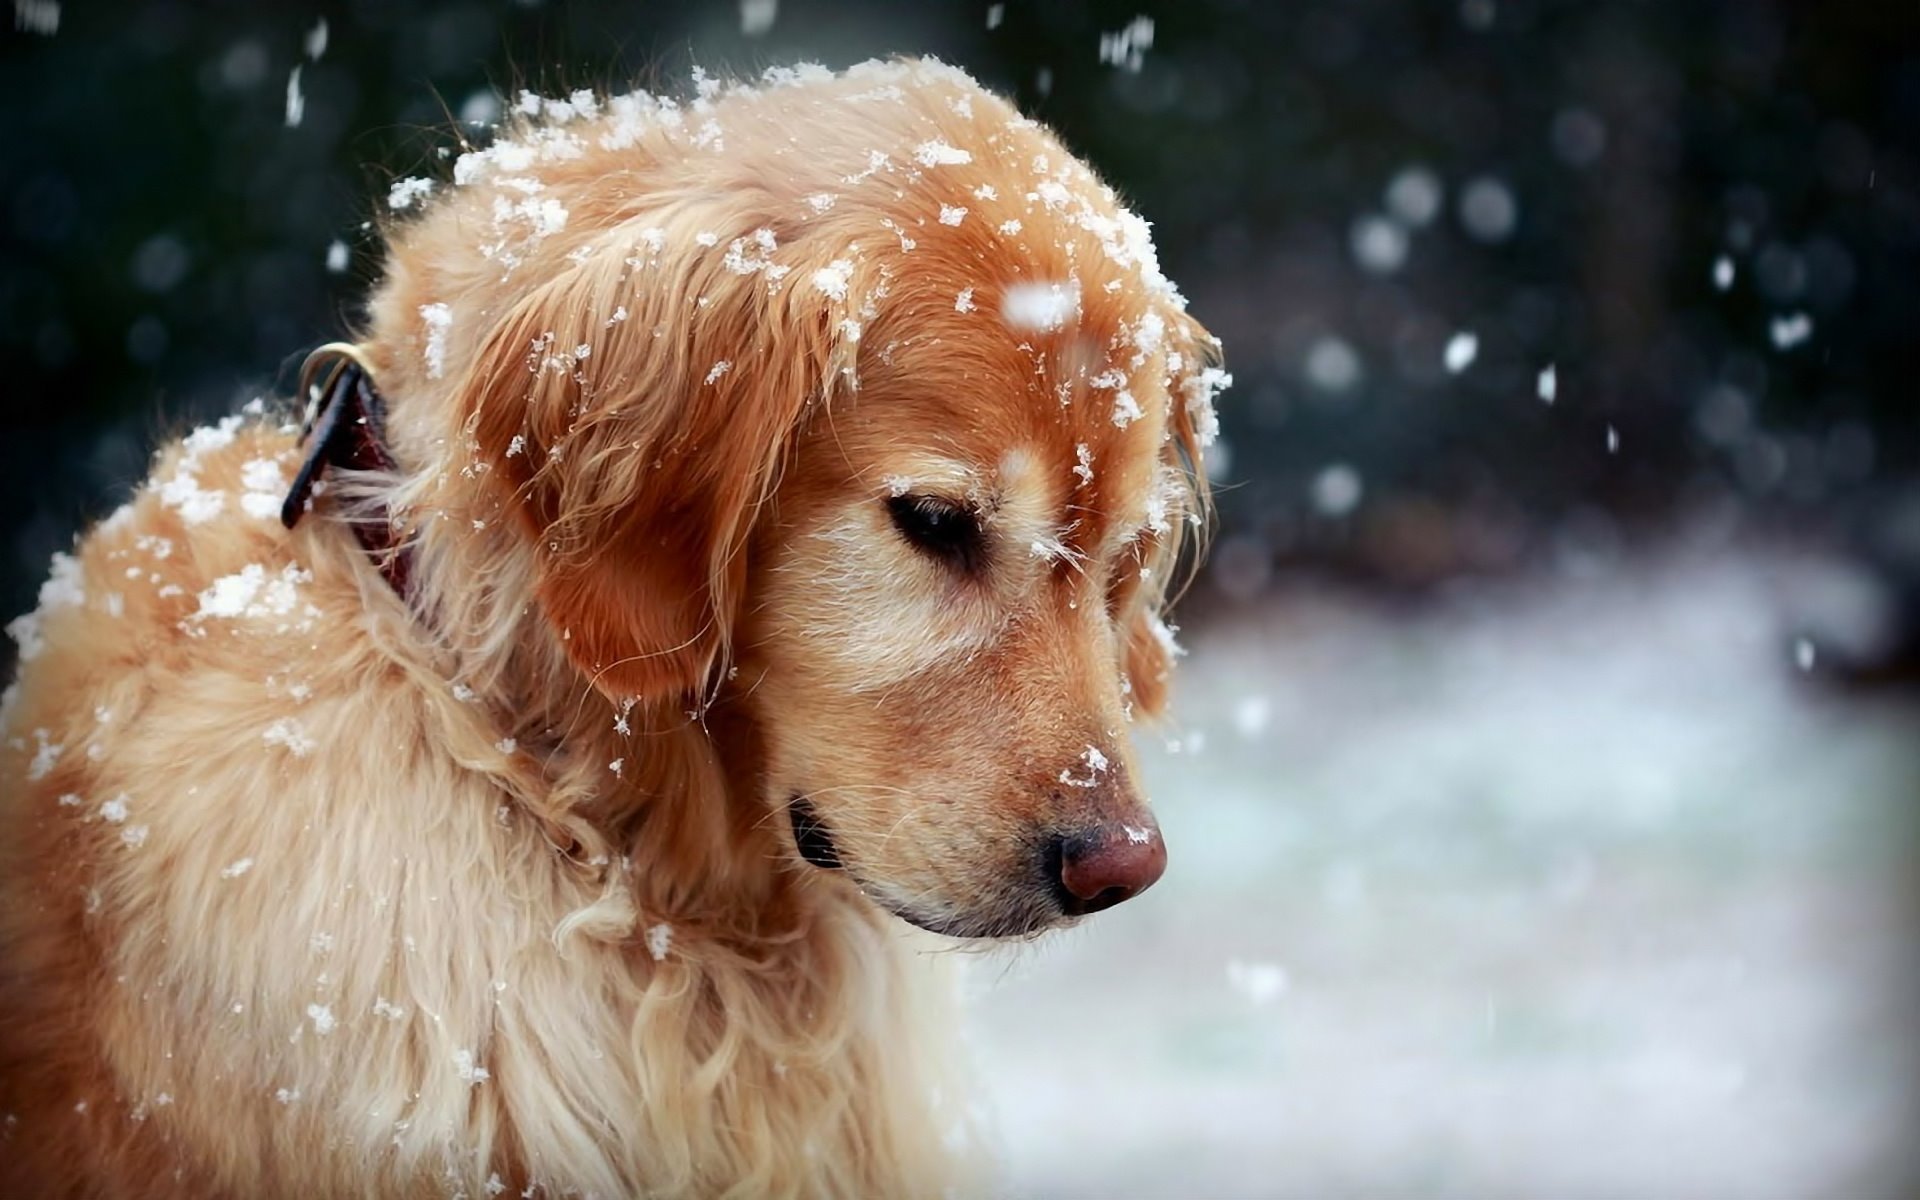 A venit frigul! 10 lucruri pe care le poti face pentru a-ti proteja cainele